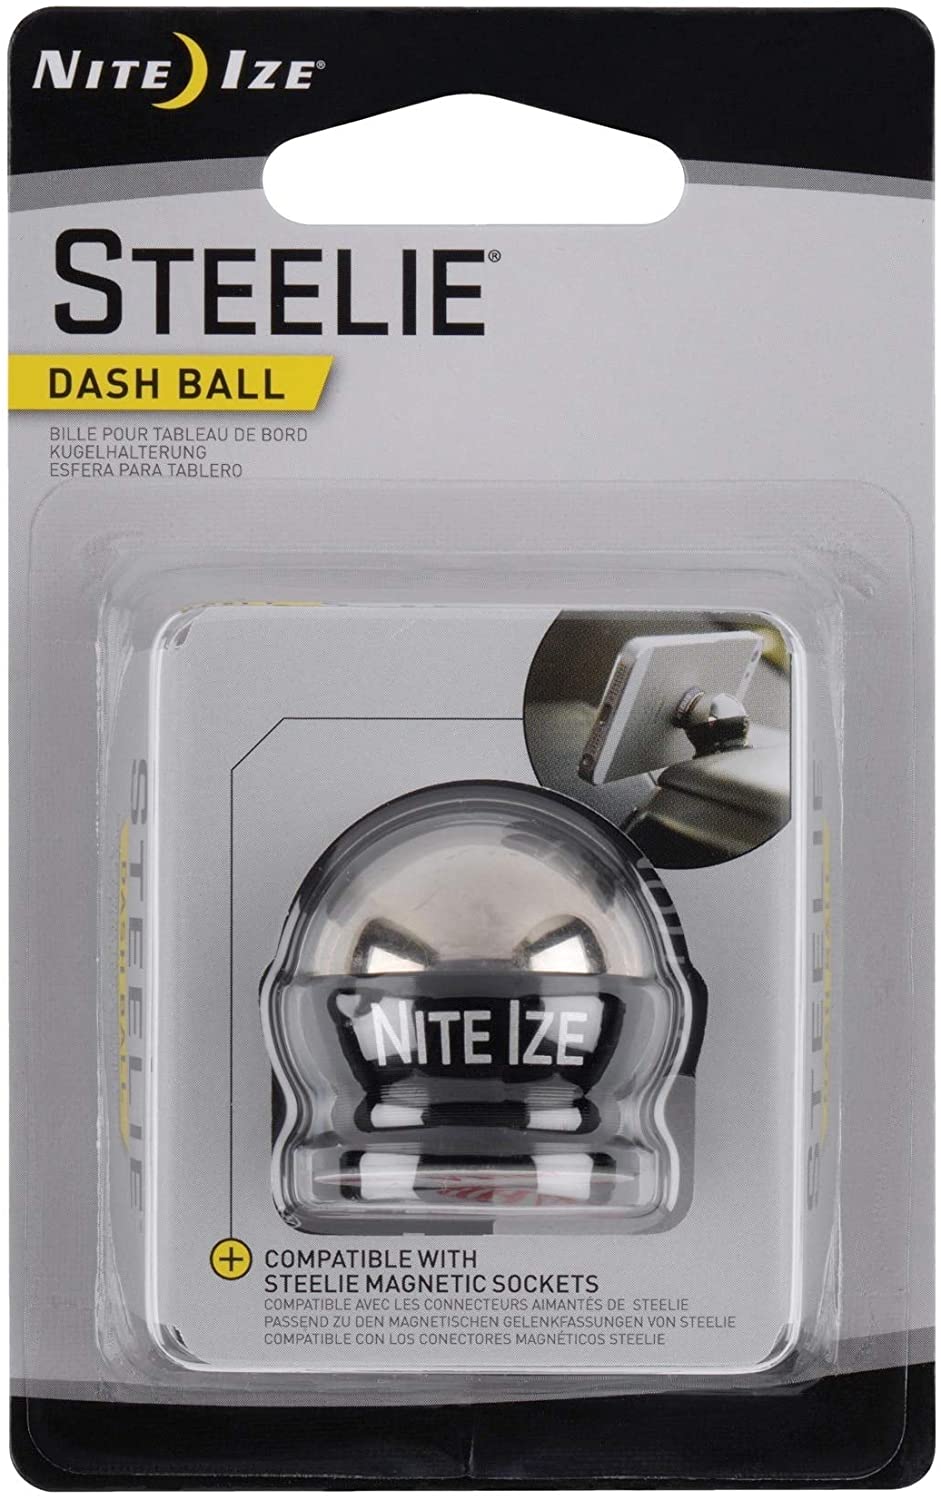 Steelie® Dash Ball - Component